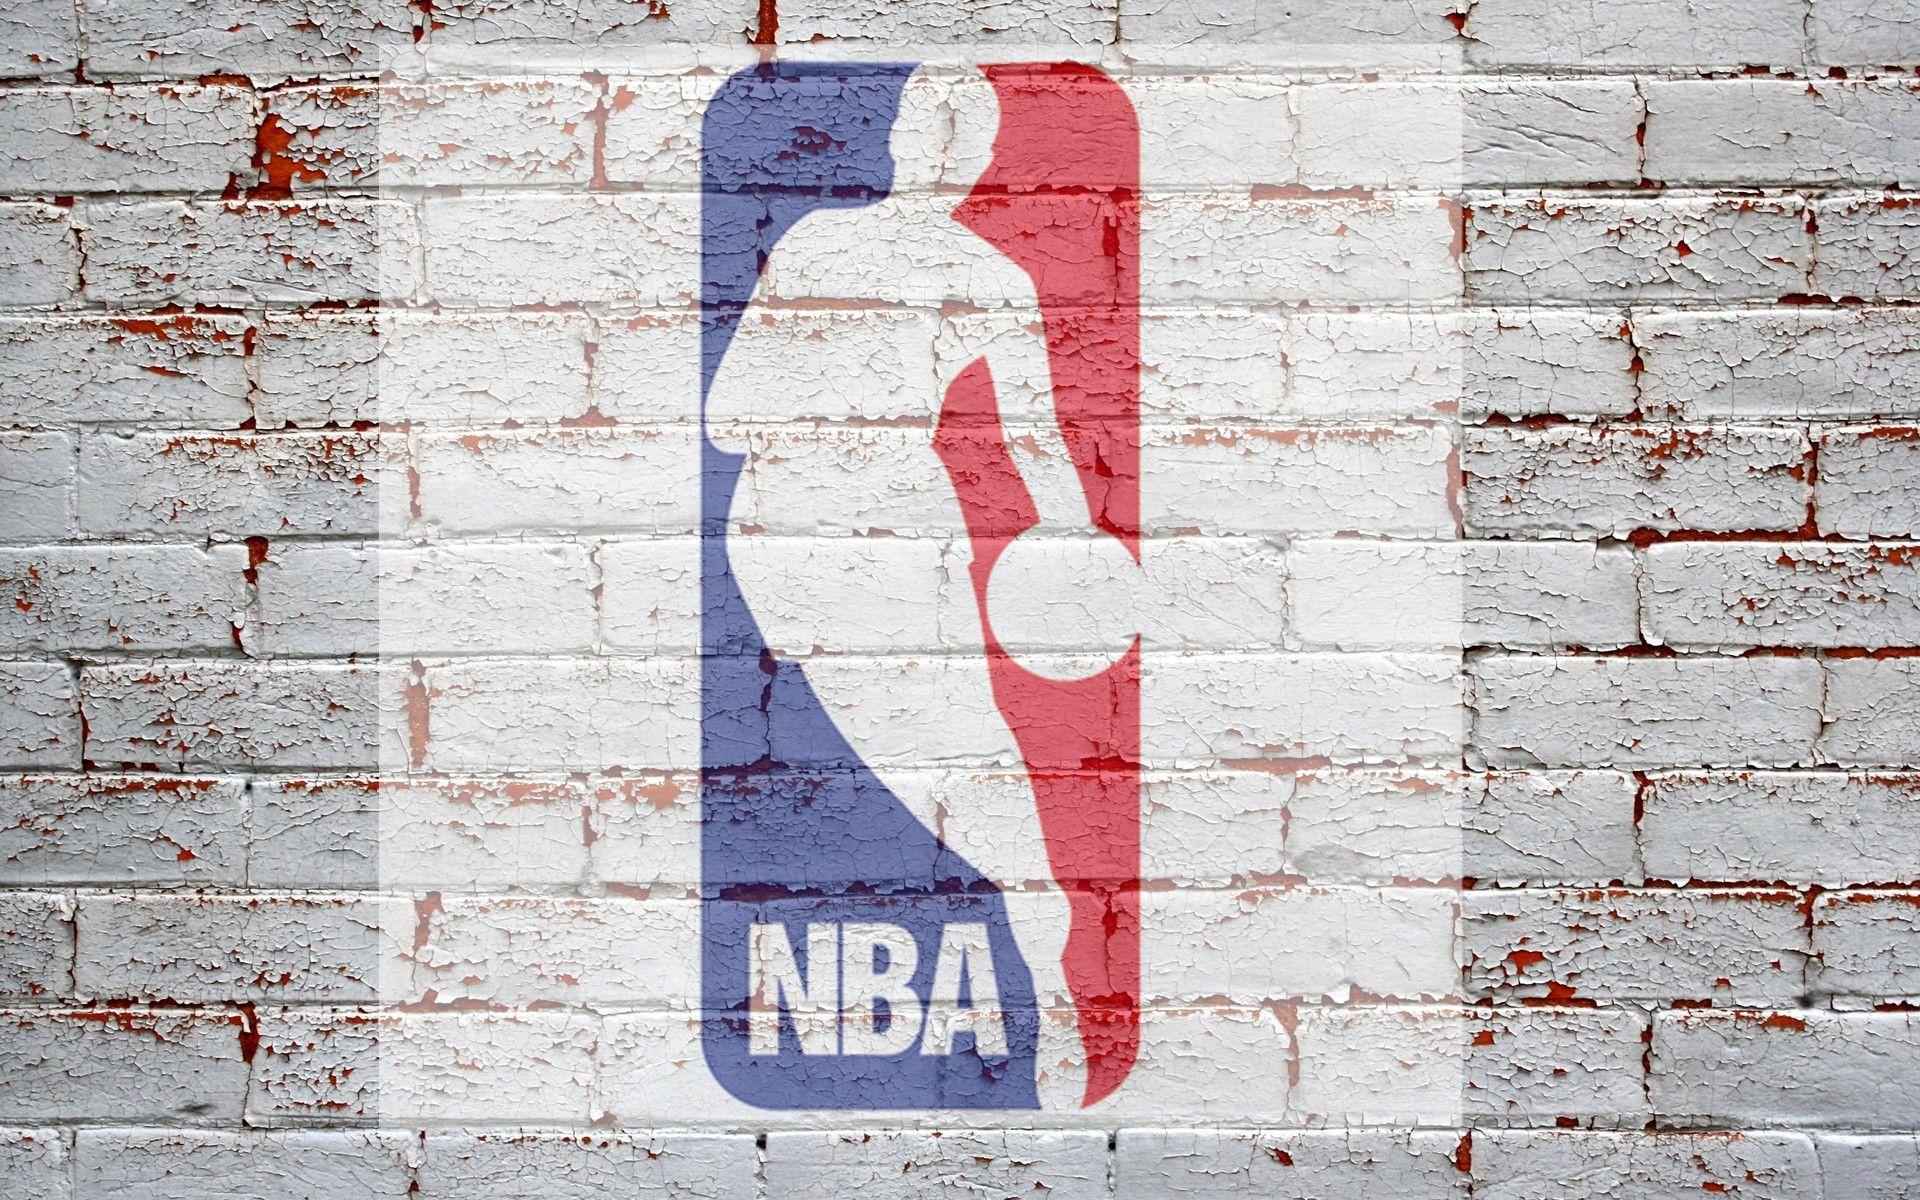 精选NBA篮球巨星壁纸_体育_太平洋科技